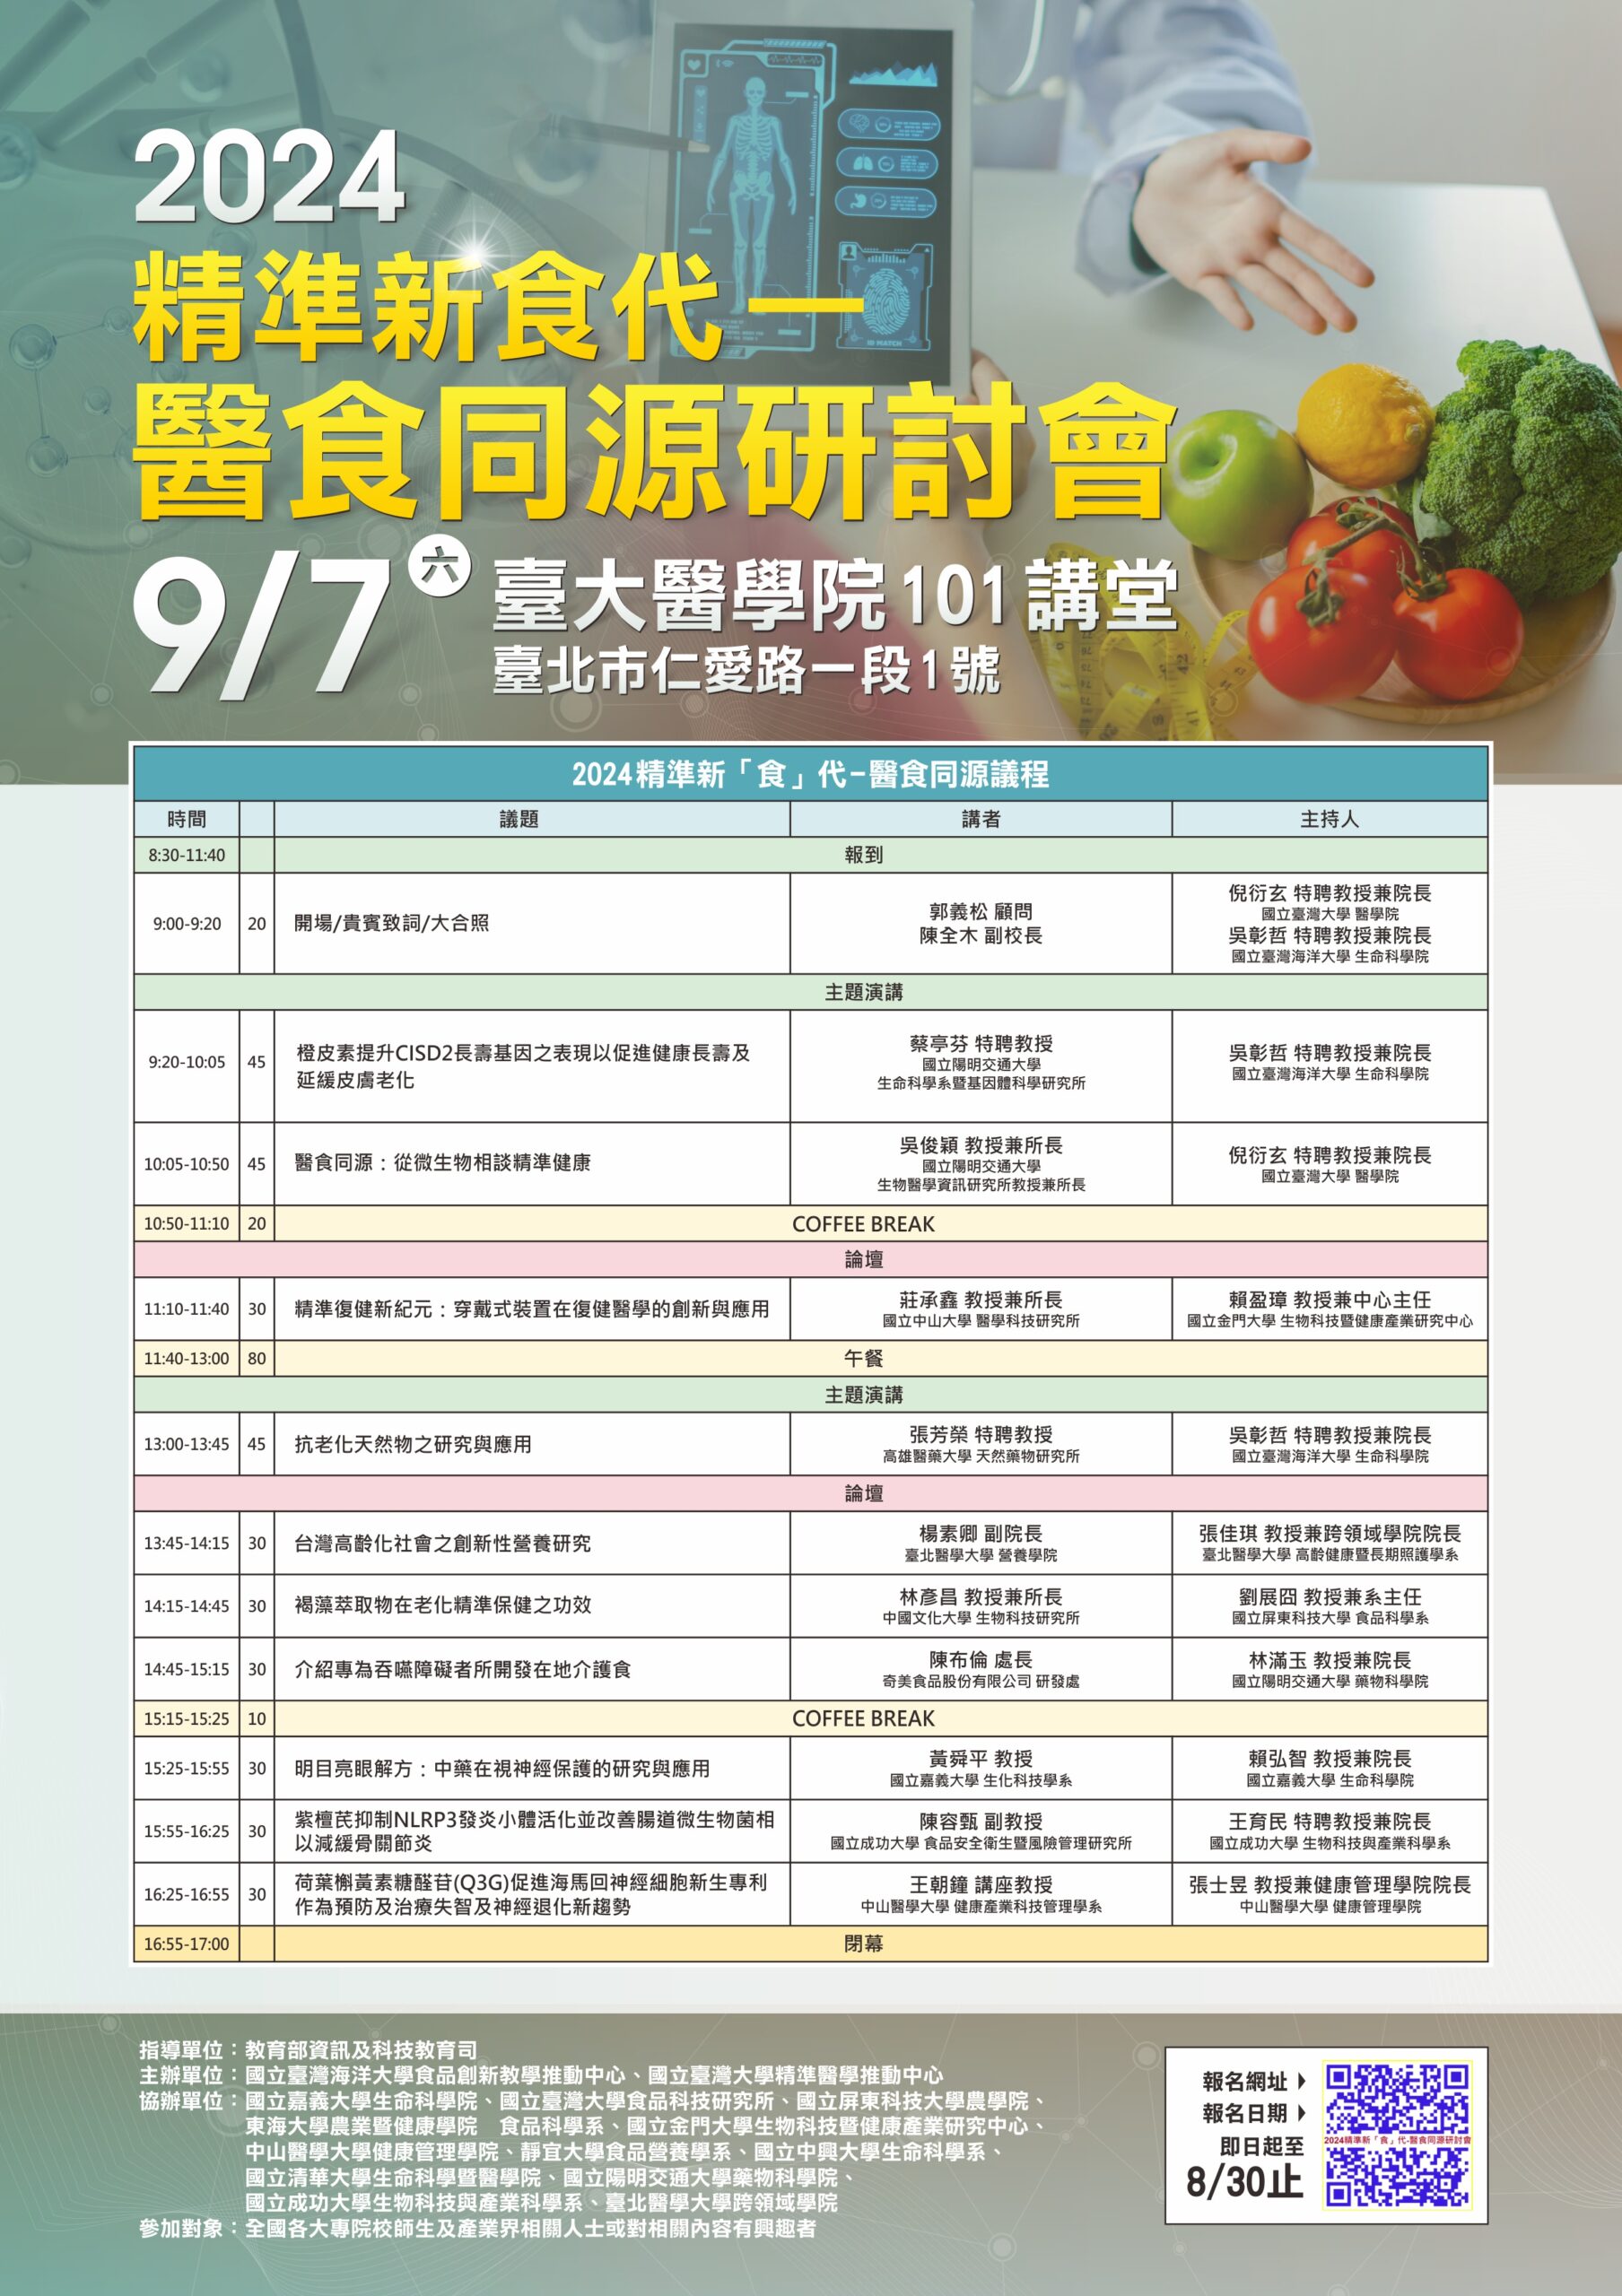 【活動轉知】2024 精準新「食」代-醫食同源研討會